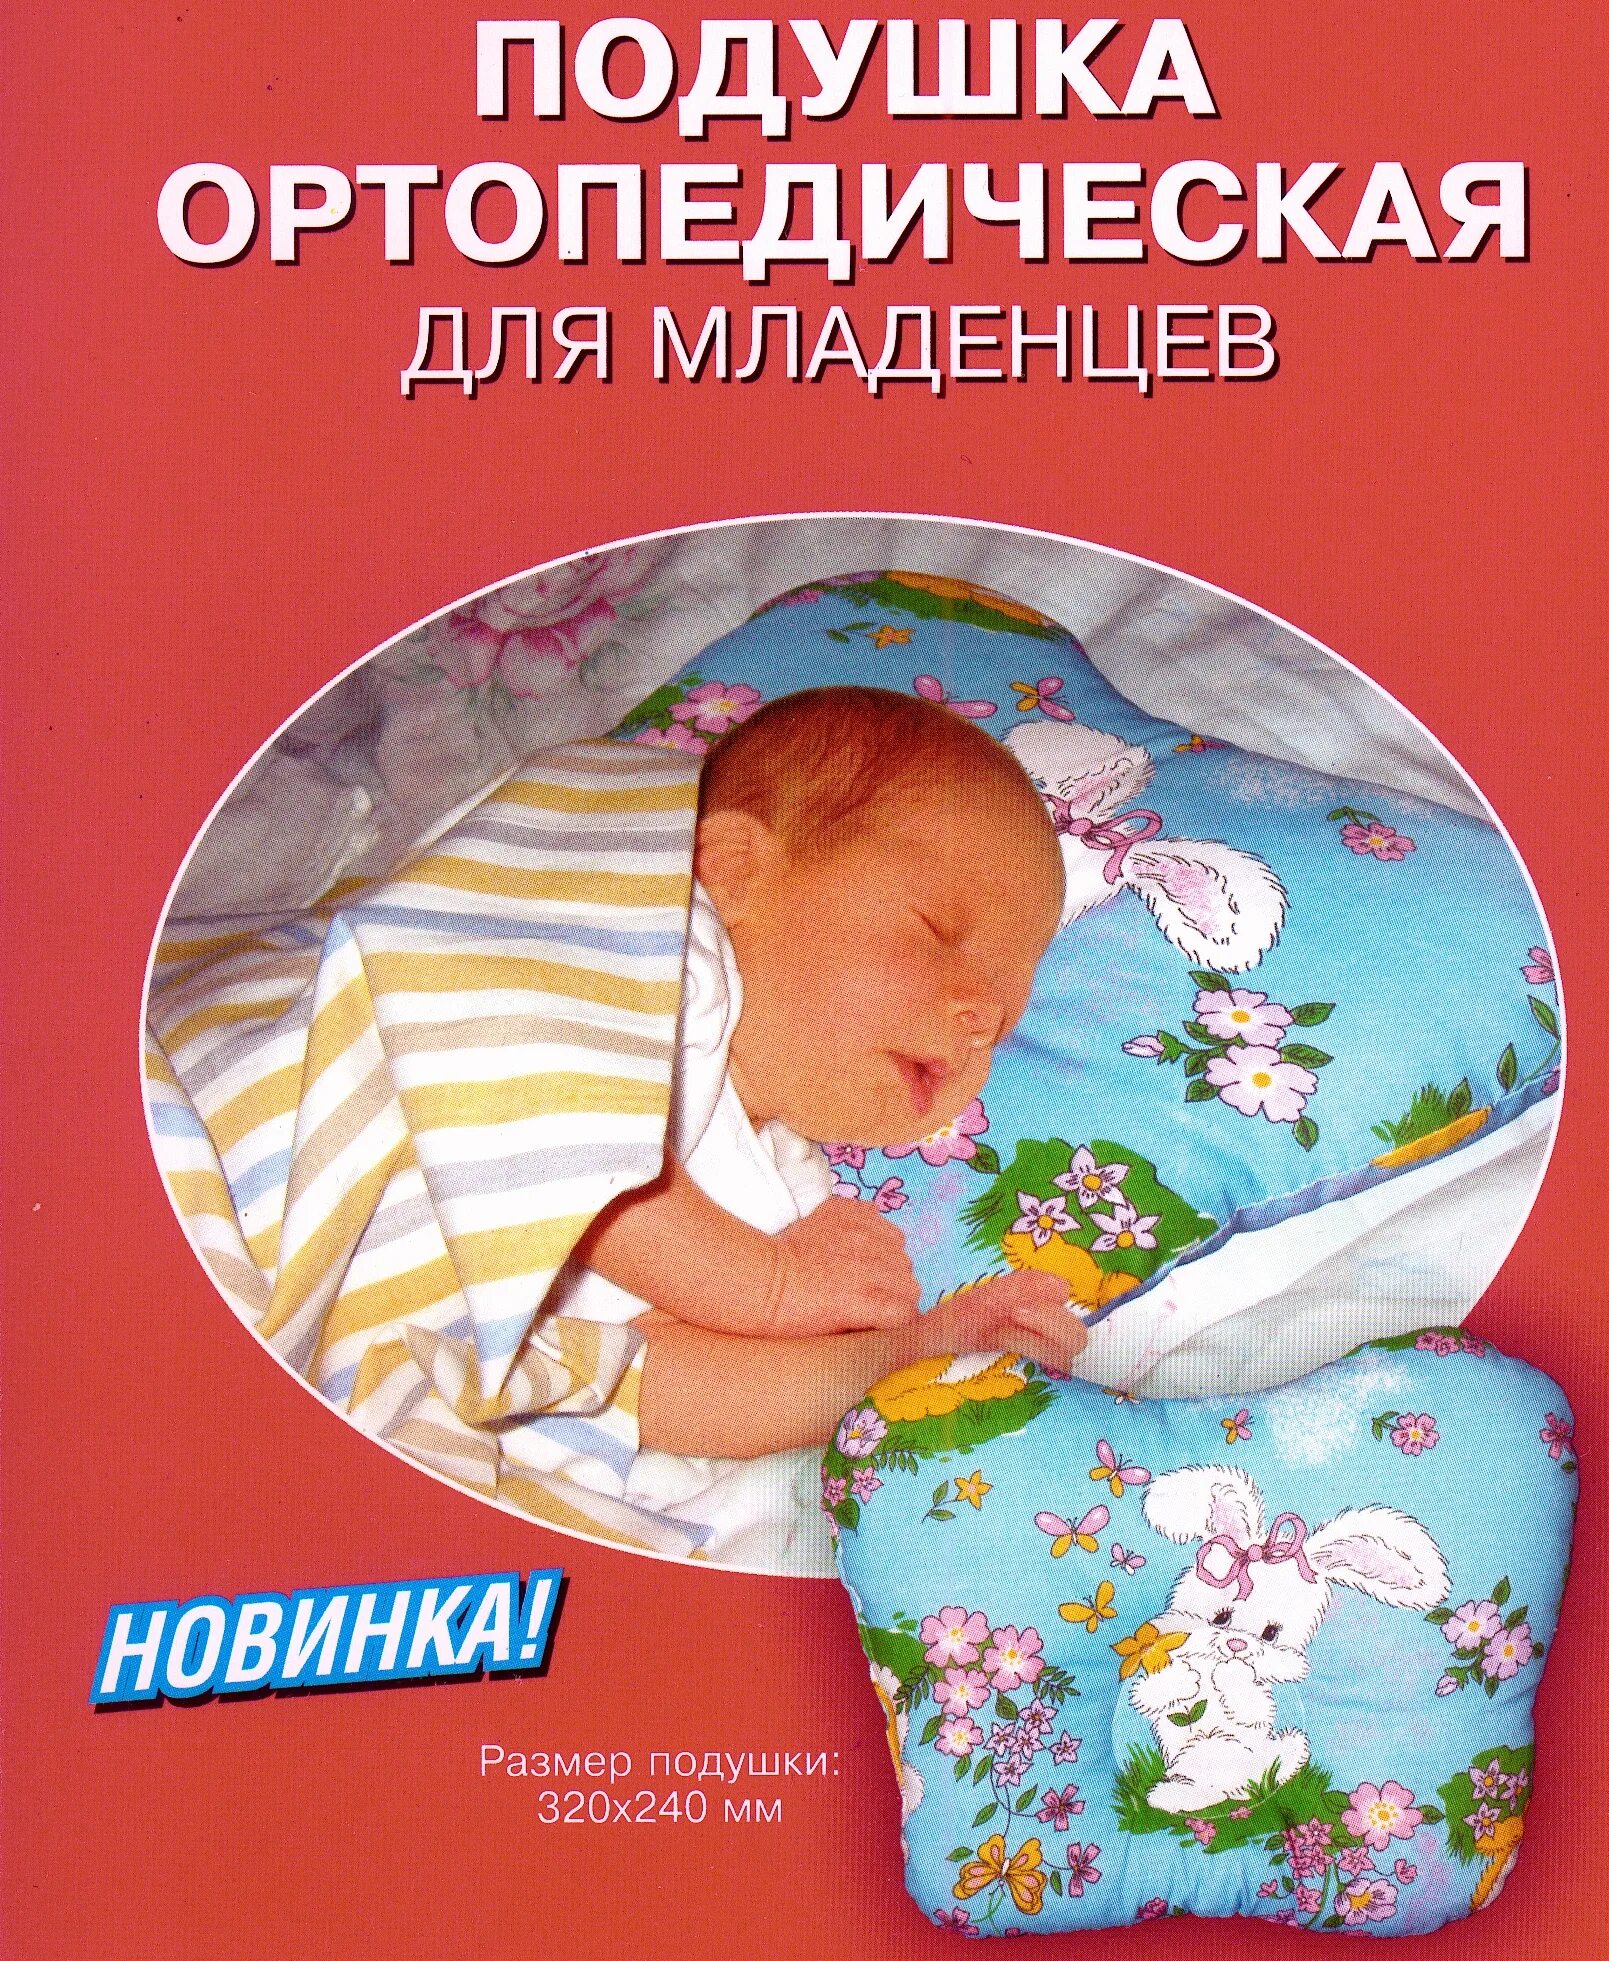 Подушка новорожденному с какого возраста. К-800 подушка ортопедическая для младенцев комф-ОРТ. Подушка ортопедическая для сна для младенцев. К 800 подушка ортопедическая для младенце. Подушка для новорожденных ортопедическая комфорт.